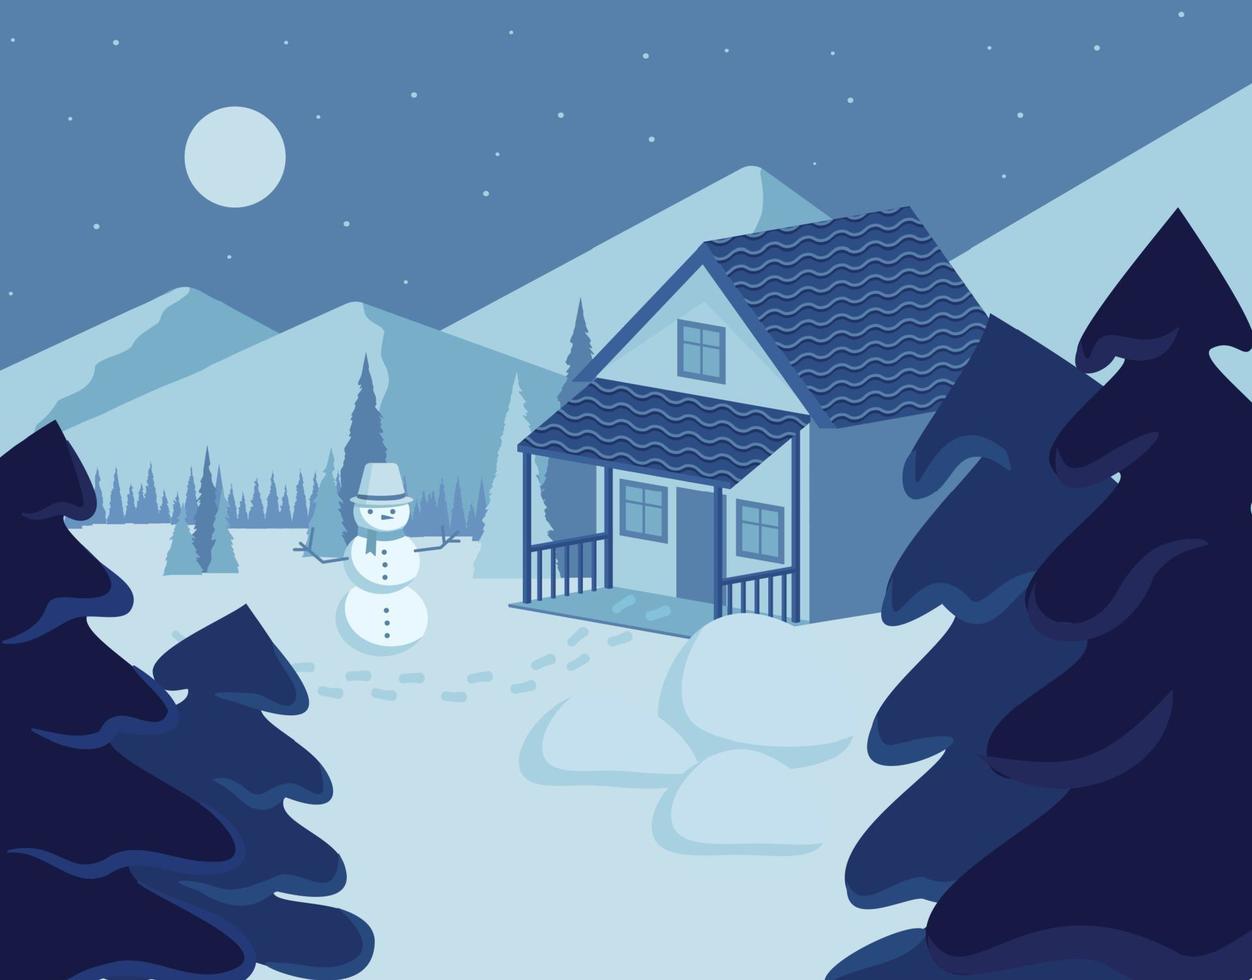 dibujos animados vectoriales de casas suburbanas navideñas y niños haciendo un muñeco de nieve vector